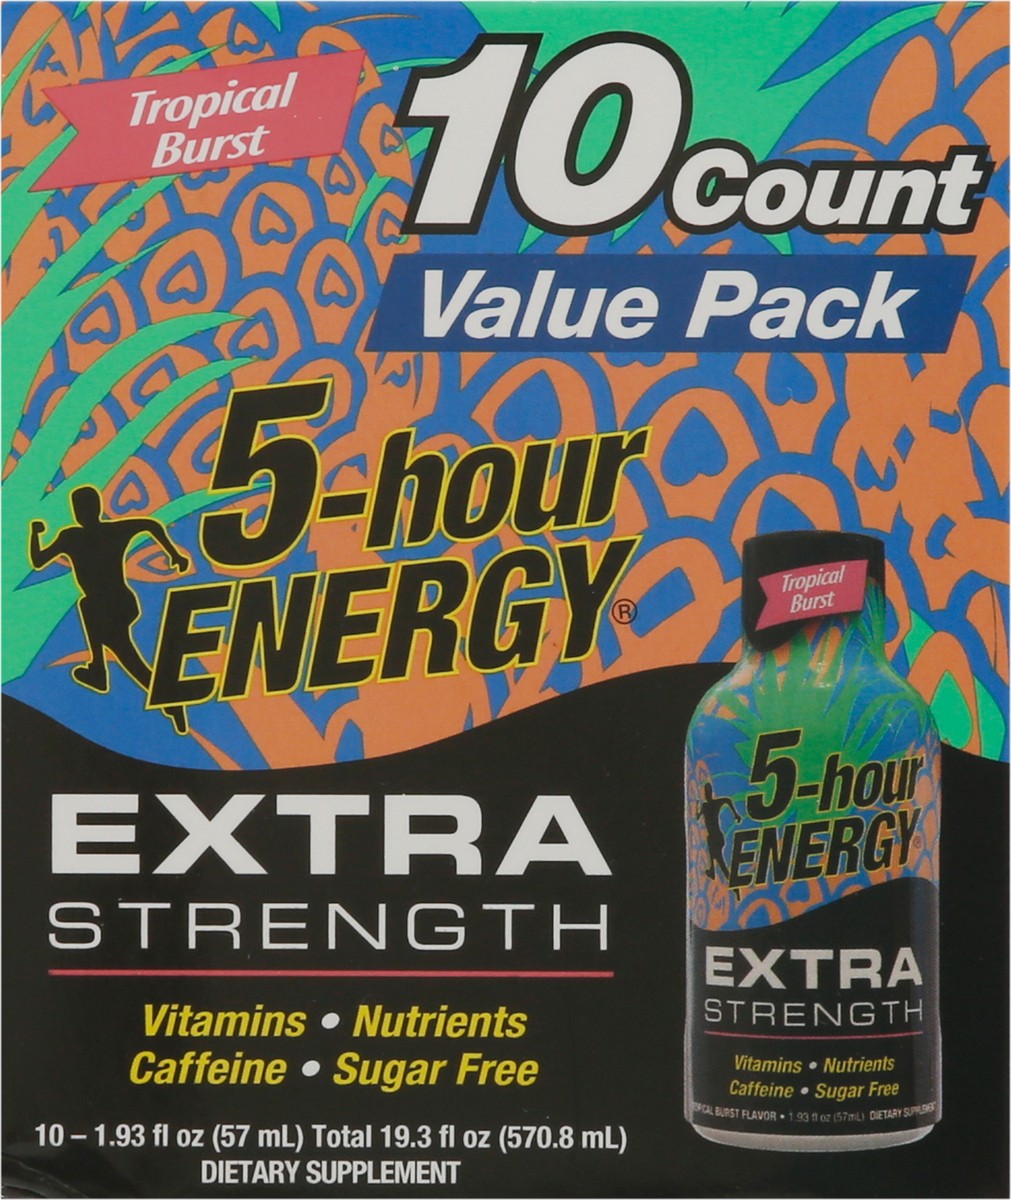 slide 7 of 9, 5-Hour Energy Extra Strength Tropical Burst Energy Drink Value Pack 10 - 1.93 fl oz Bottles, 10 ct